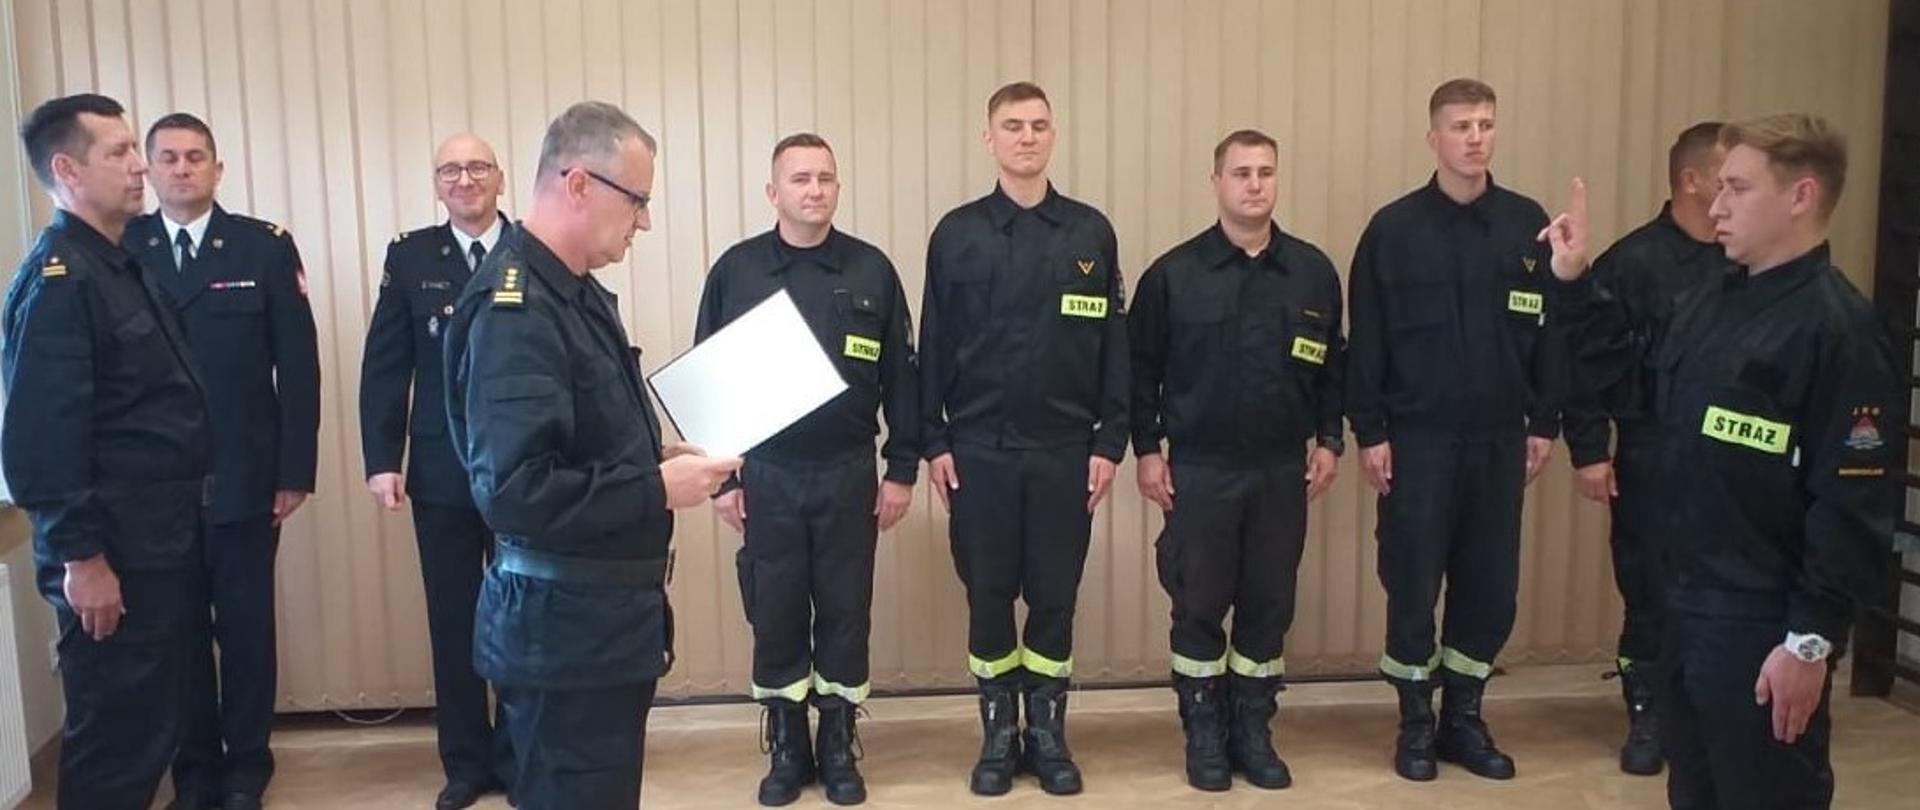 Ślubowanie strażaka z JRG 2 Inowrocław